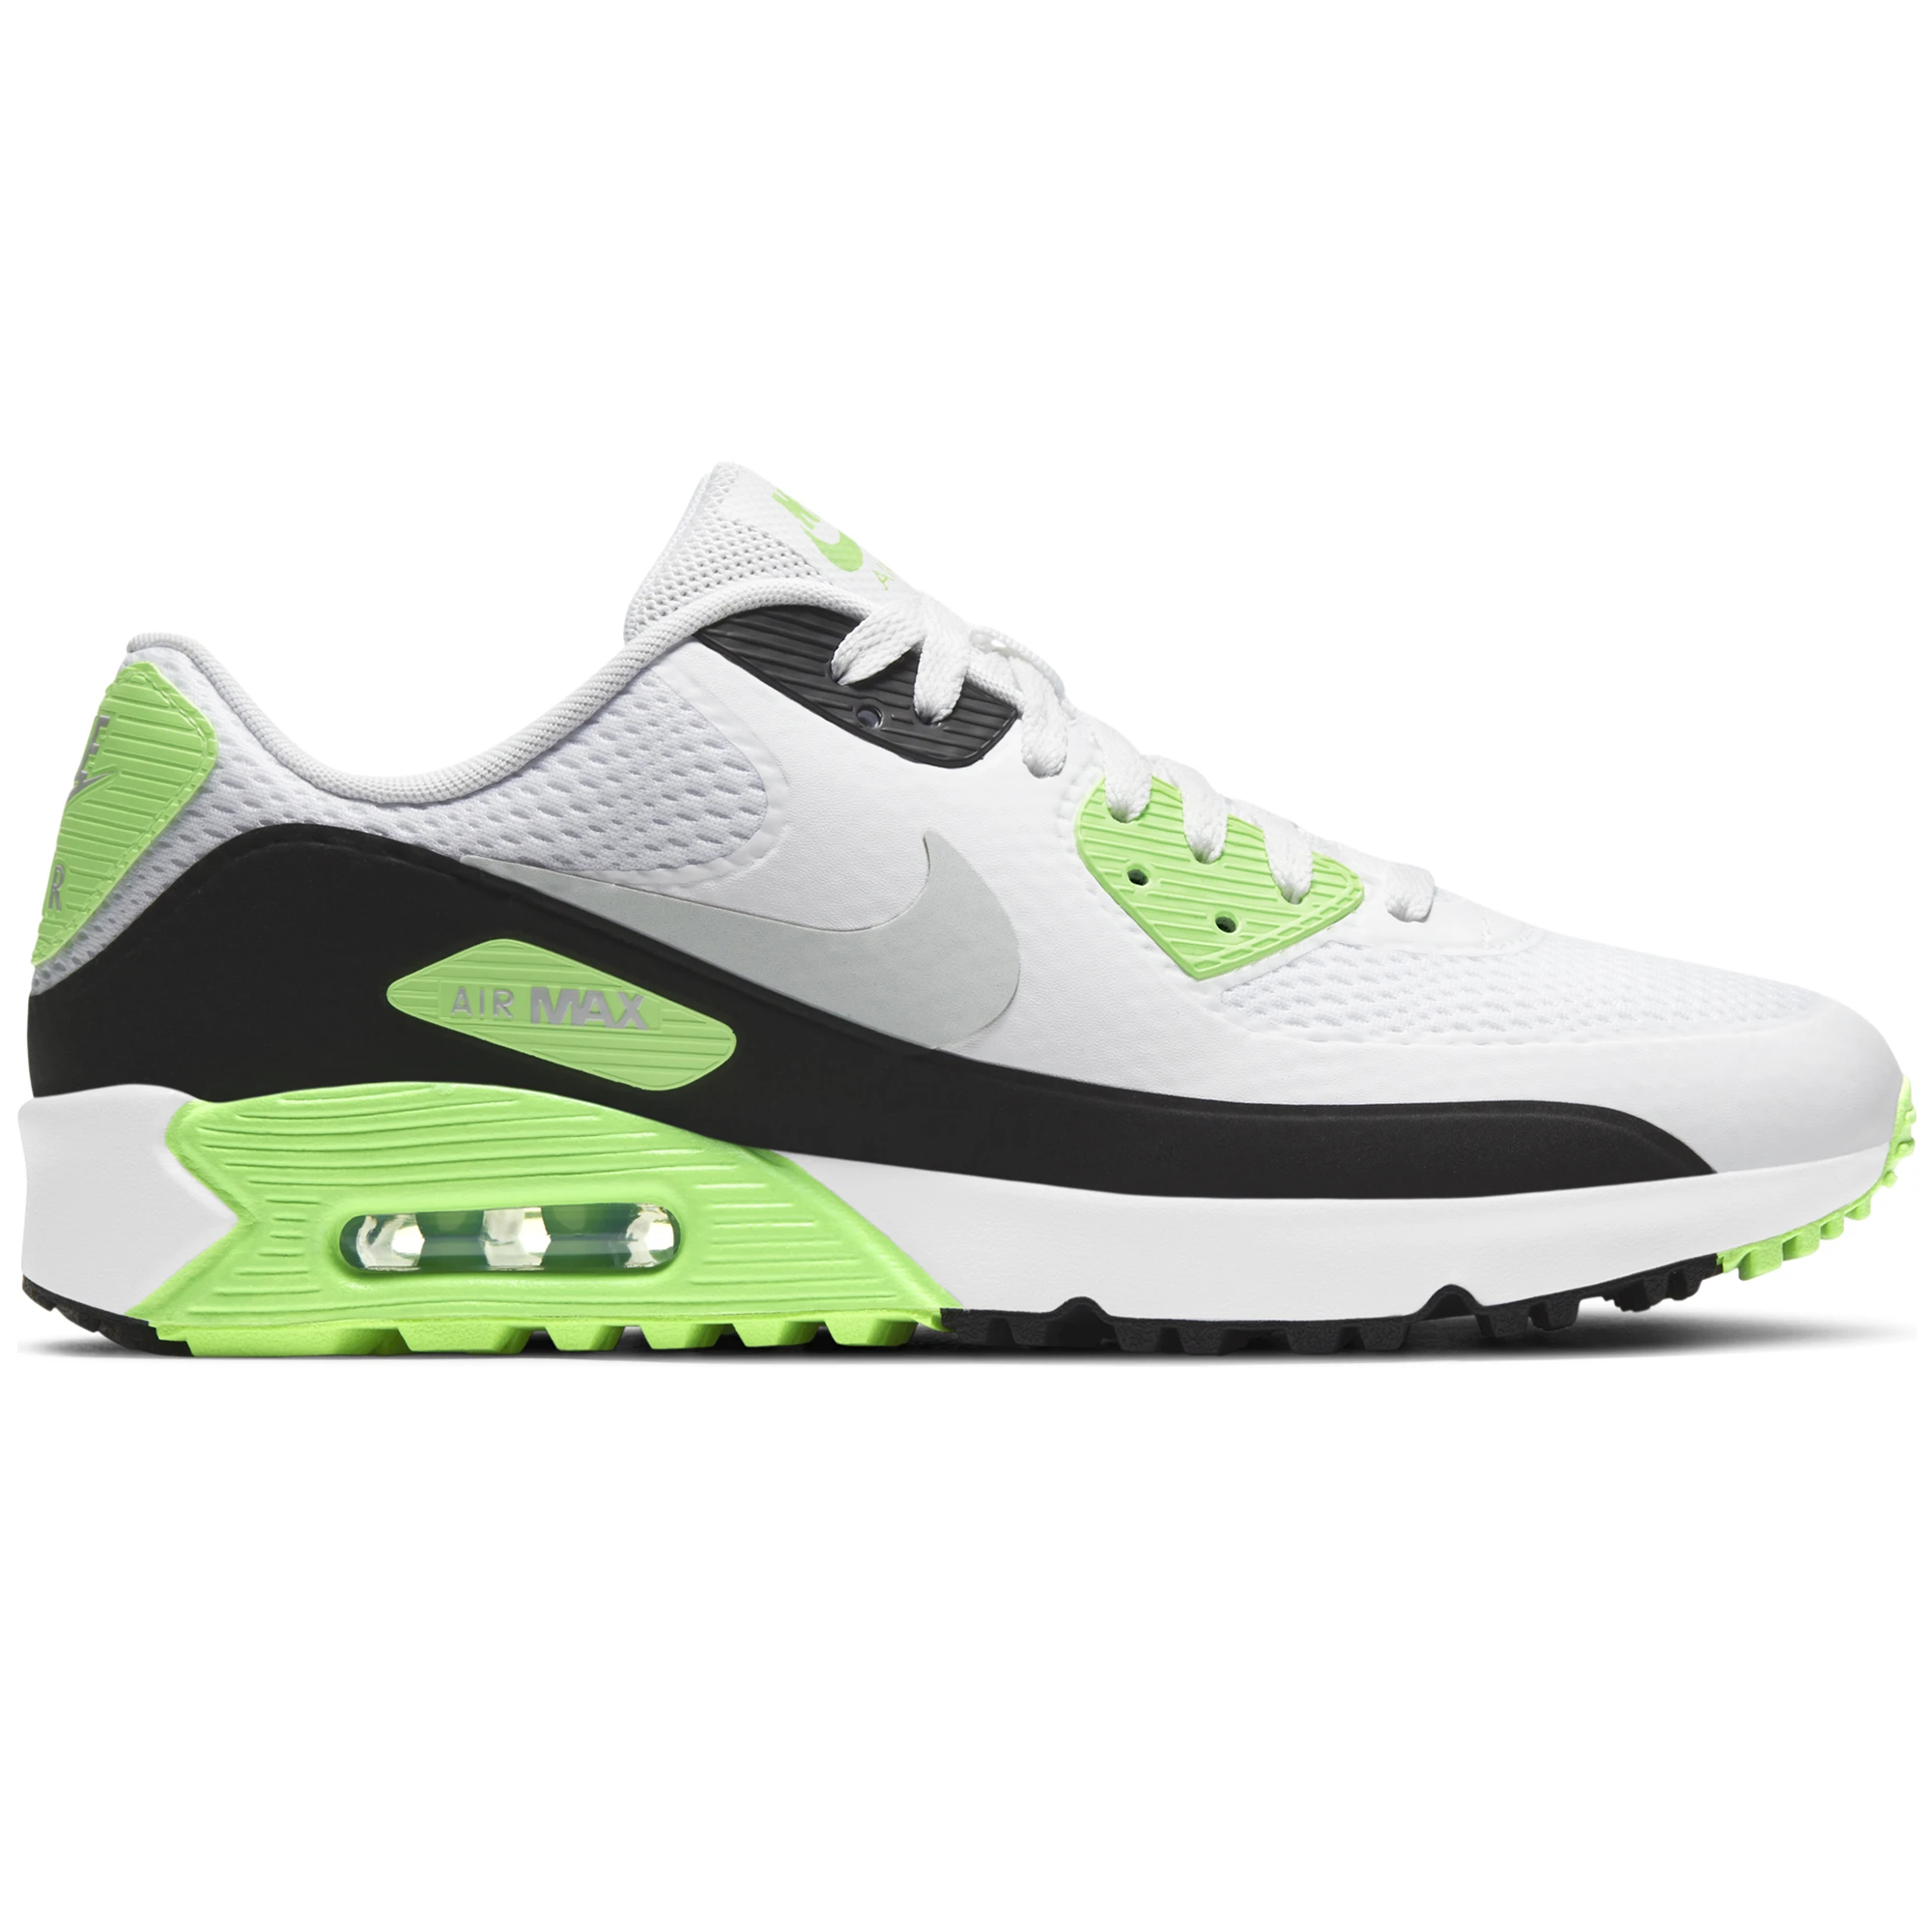 Nike Air Max 90 G Golf Shoes White/Neutral Grey/Black/Flash Lime